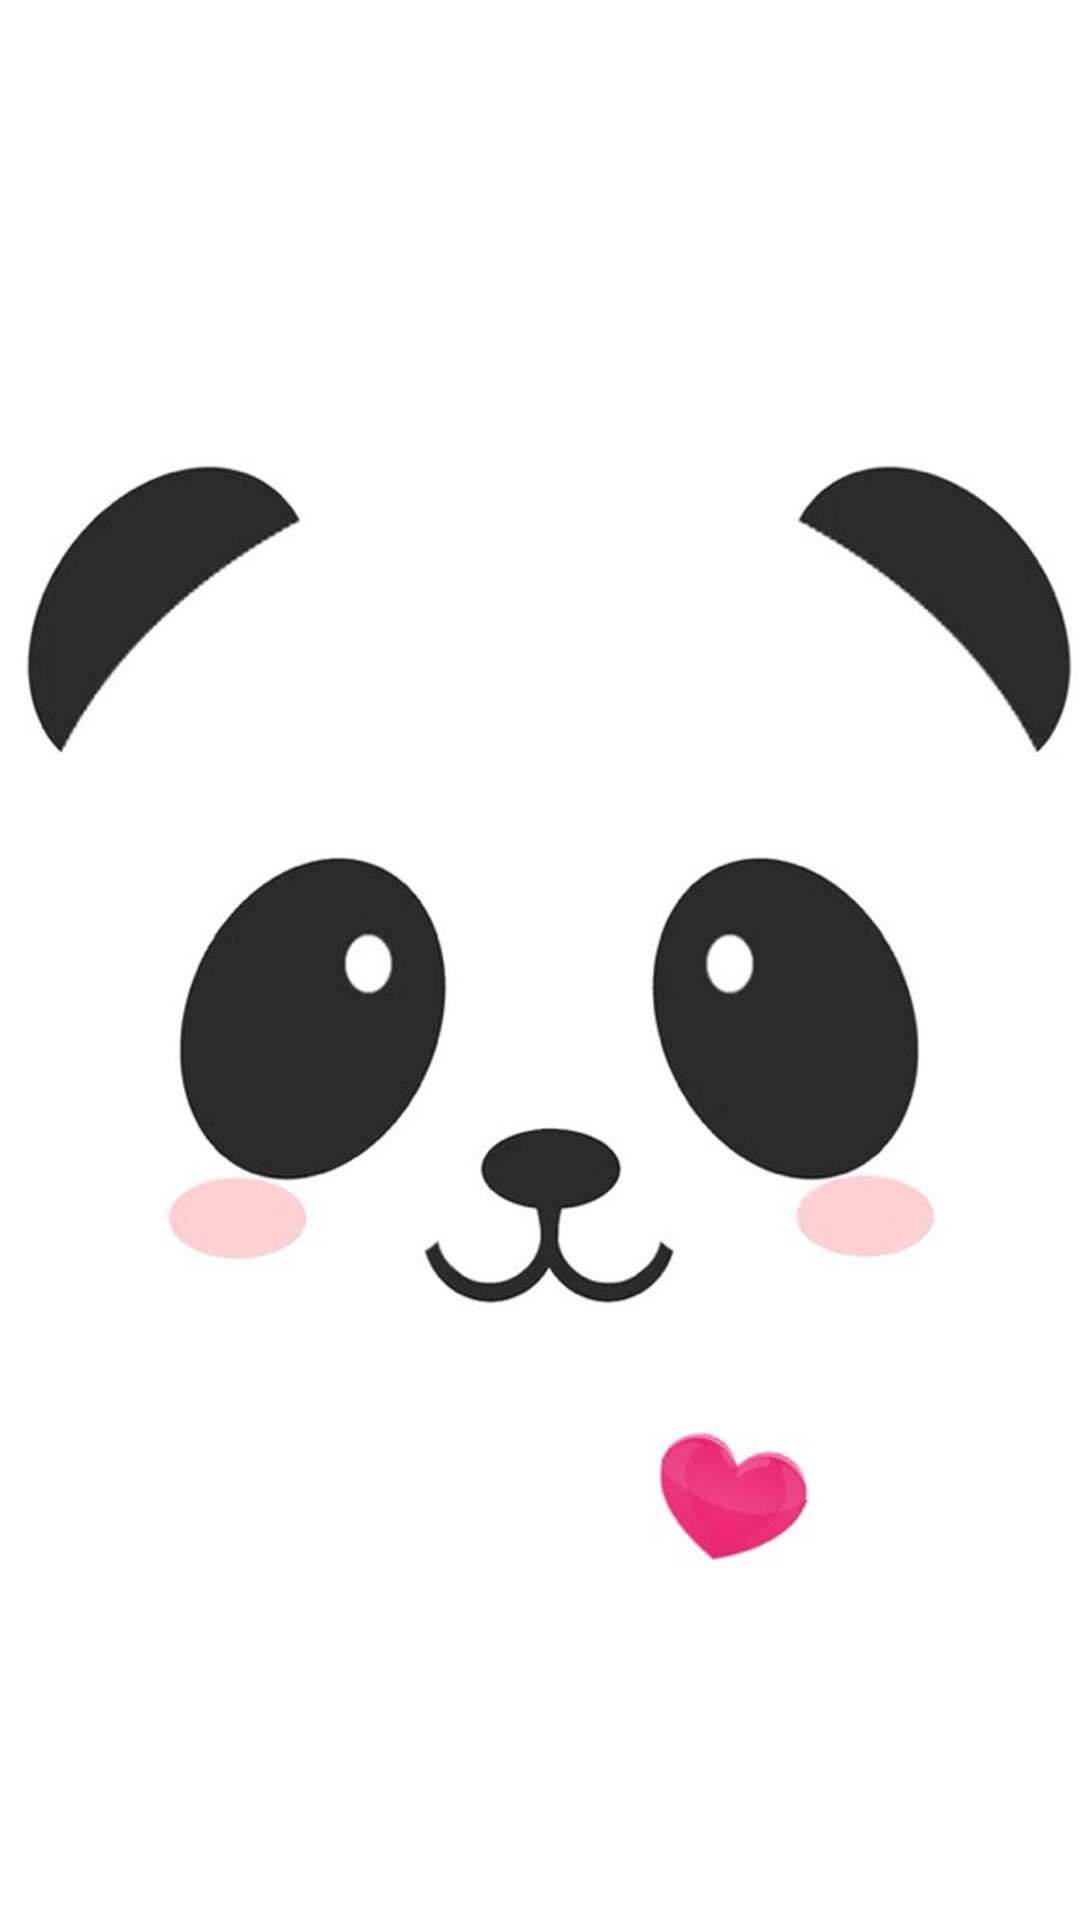 1080x1920, Iphone Cute Face Panda Wallpaper Resolution - Iphone Panda Wallpaper  Hd - 1080x1920 Wallpaper 